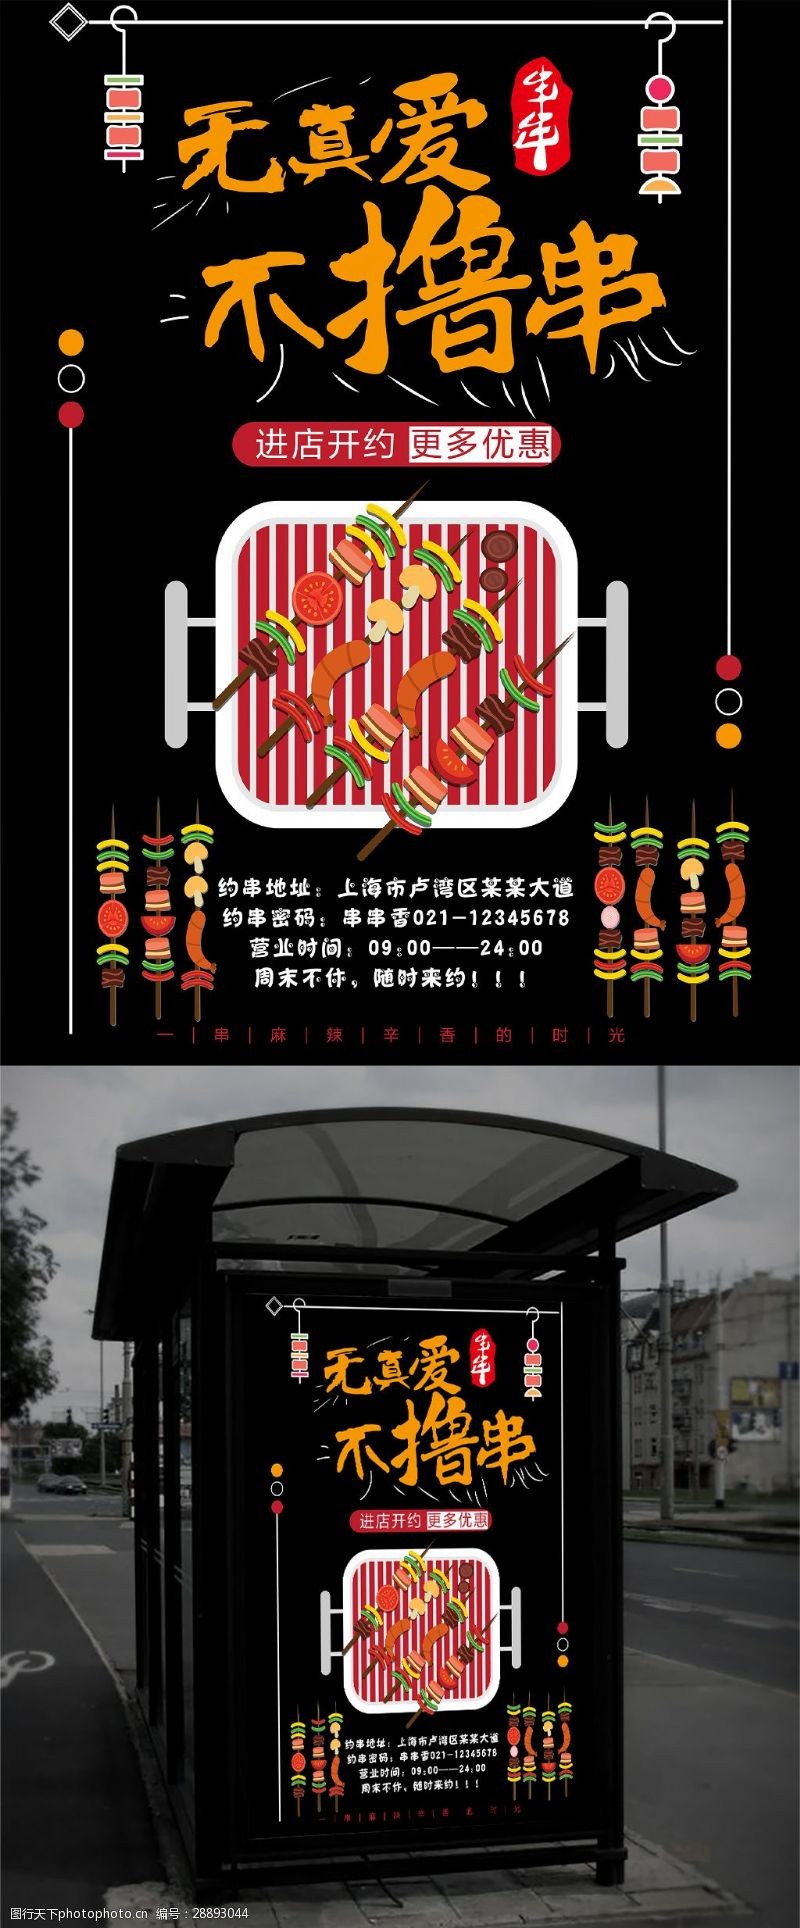 串串香广告黑色时尚简约插画风格特色串串美食宣传海报